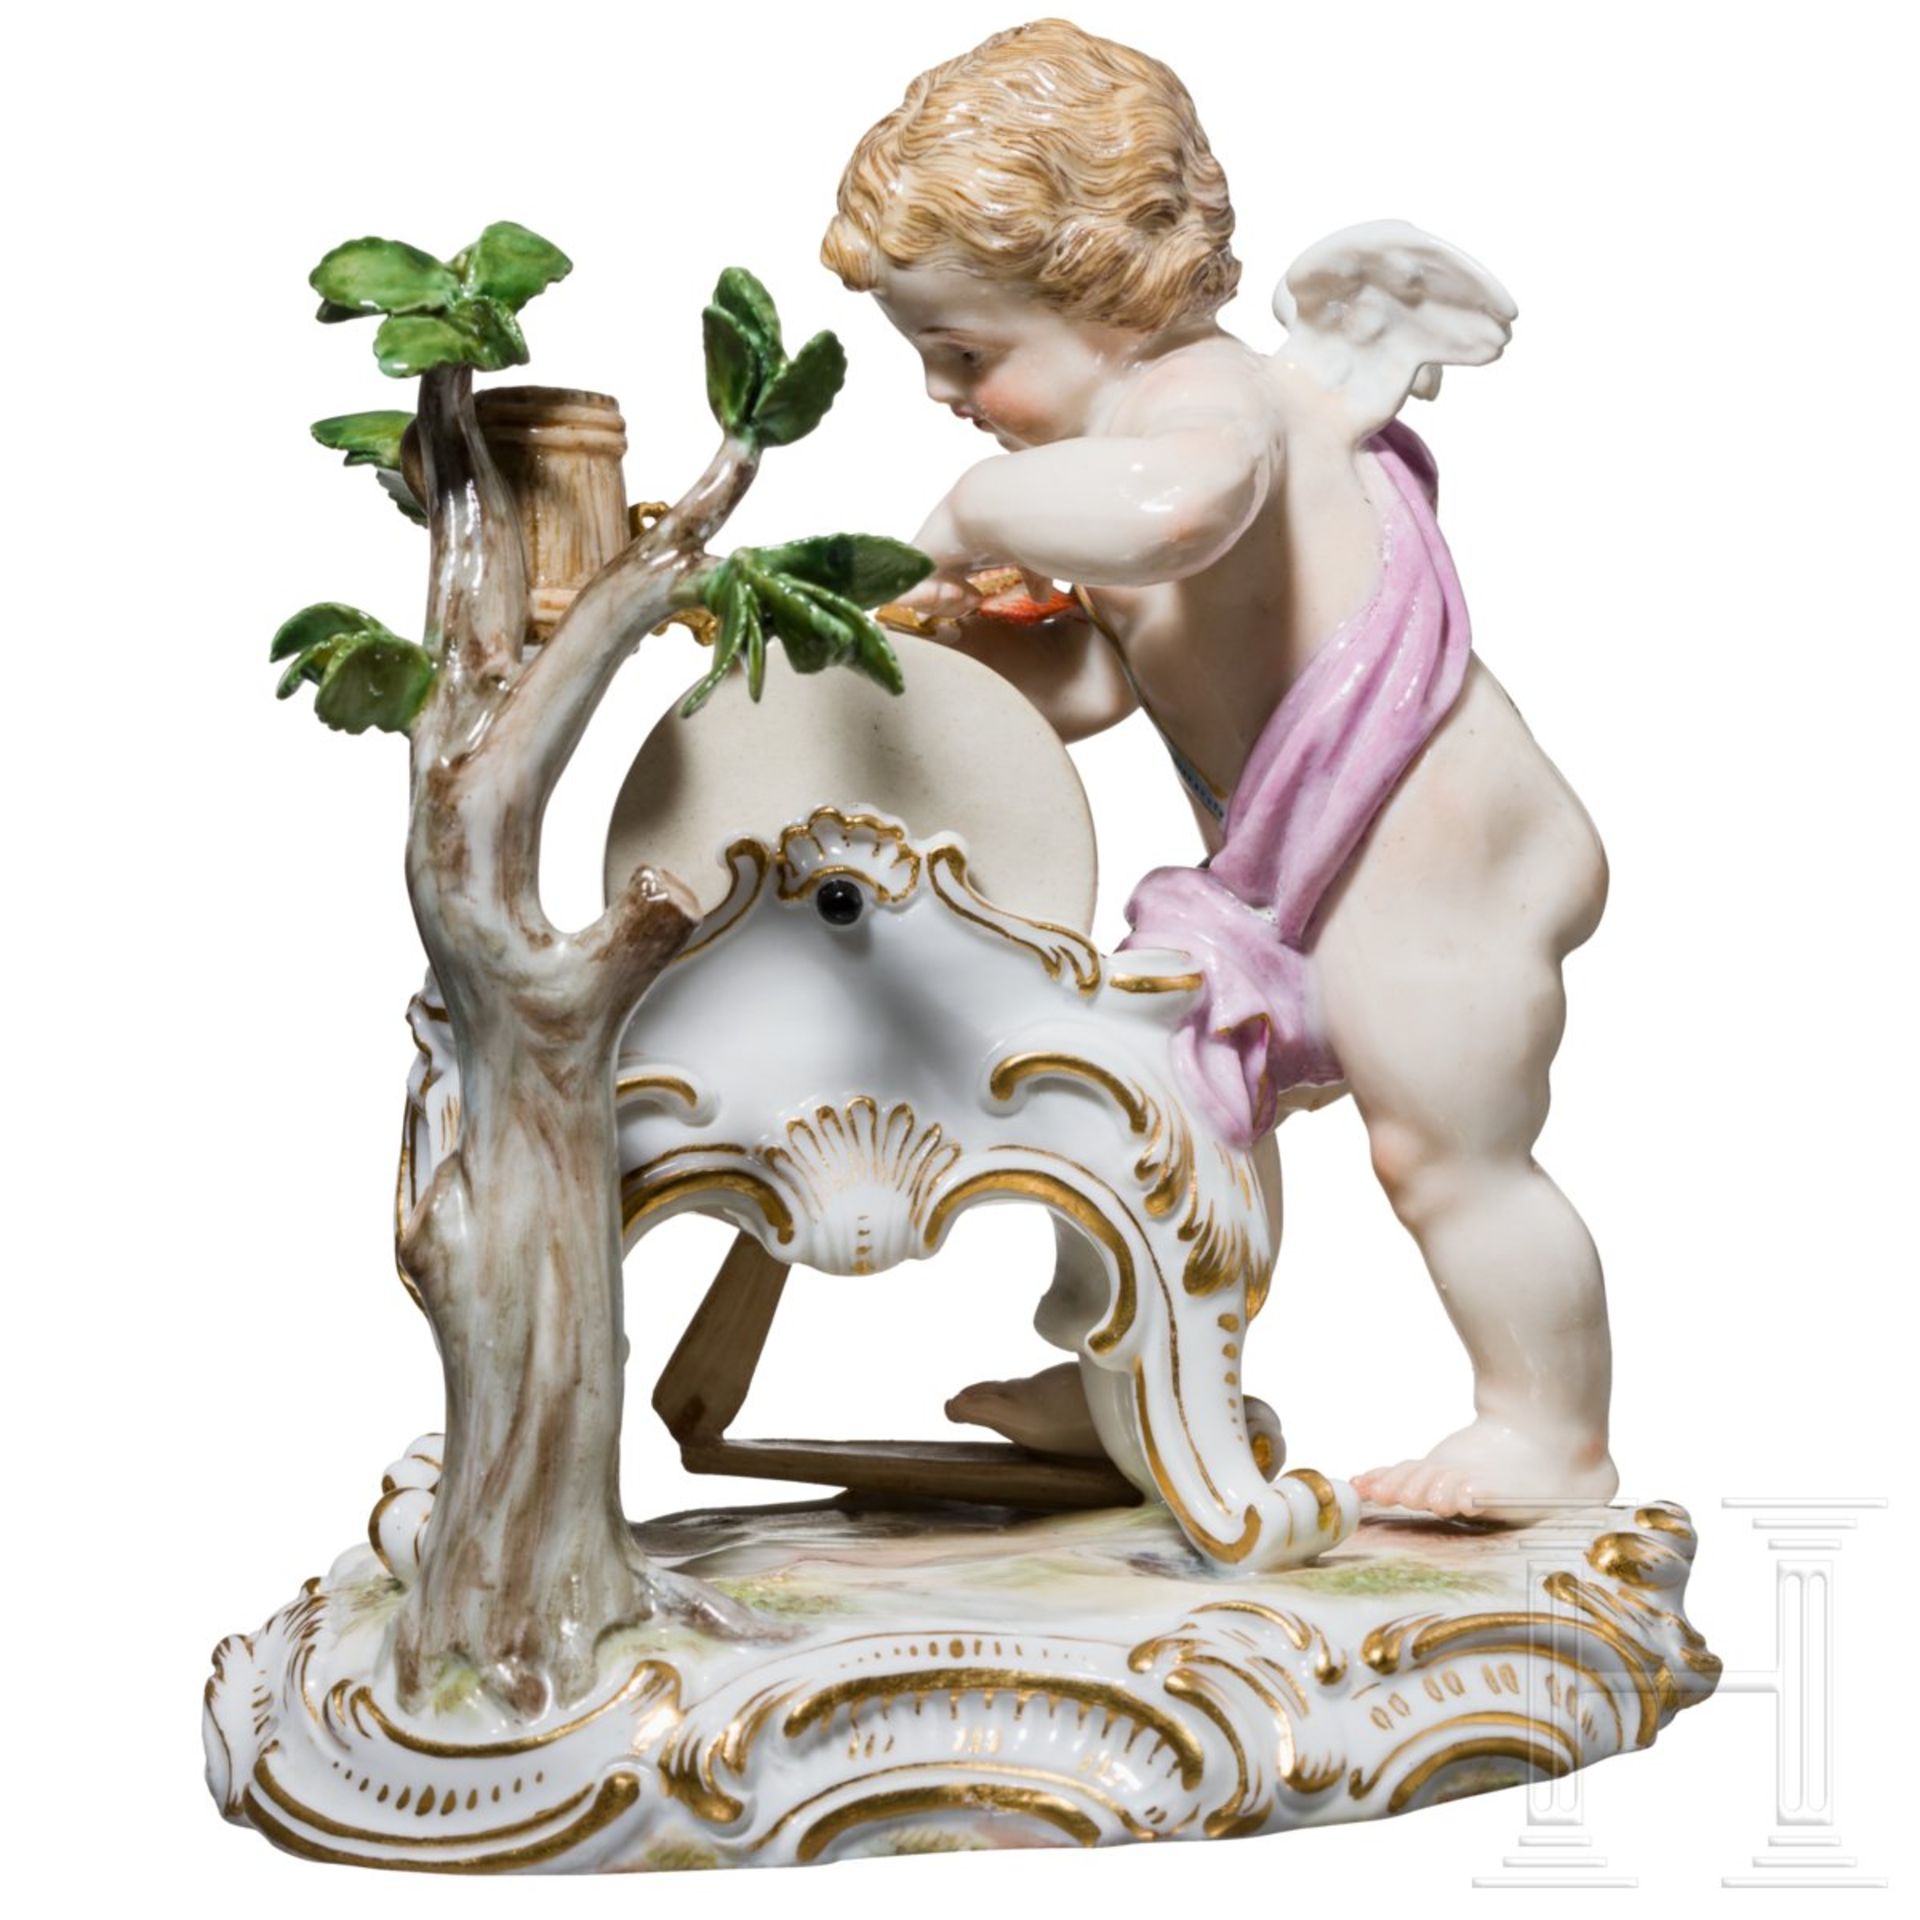 Feine Porzellanfigur Amor als Schleifer, Meißen, 19. Jhdt.Vollplastisch gearbeitetes Porzellan, bunt - Bild 2 aus 3